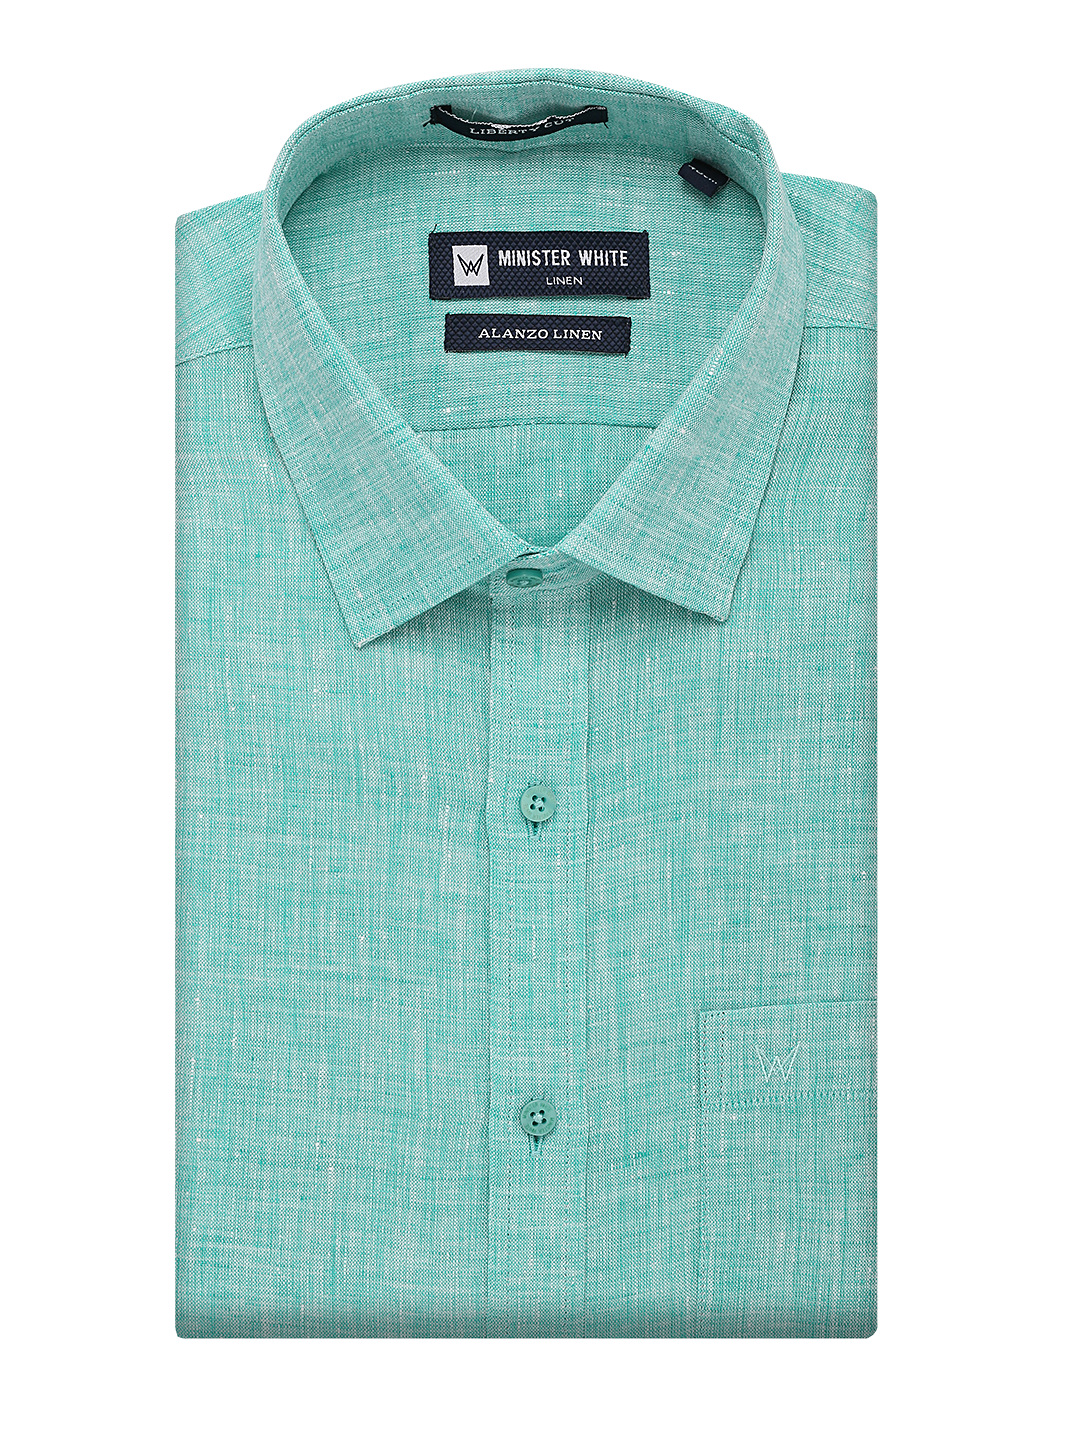 Aqua Blue Linen Shirt. Liberty Cut. Alanzo Linen